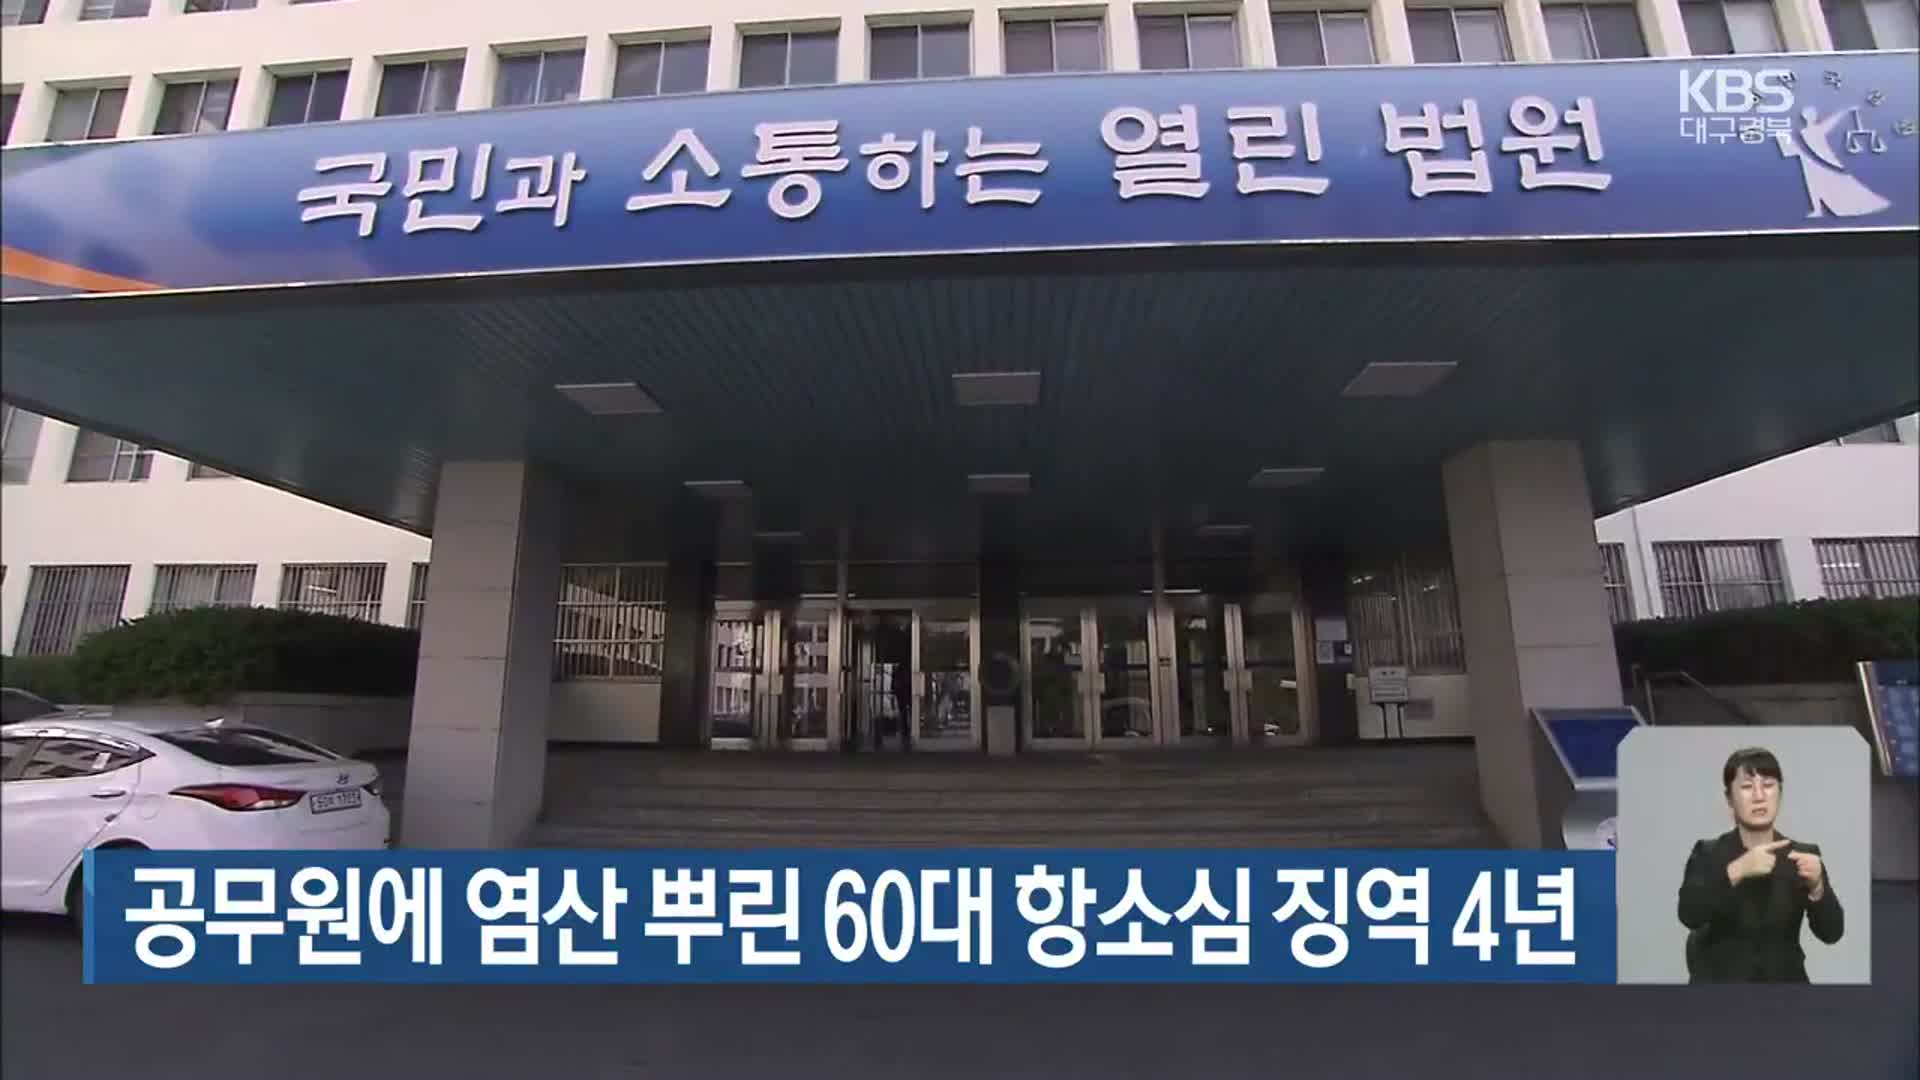 공무원에 염산 뿌린 60대 항소심 징역 4년